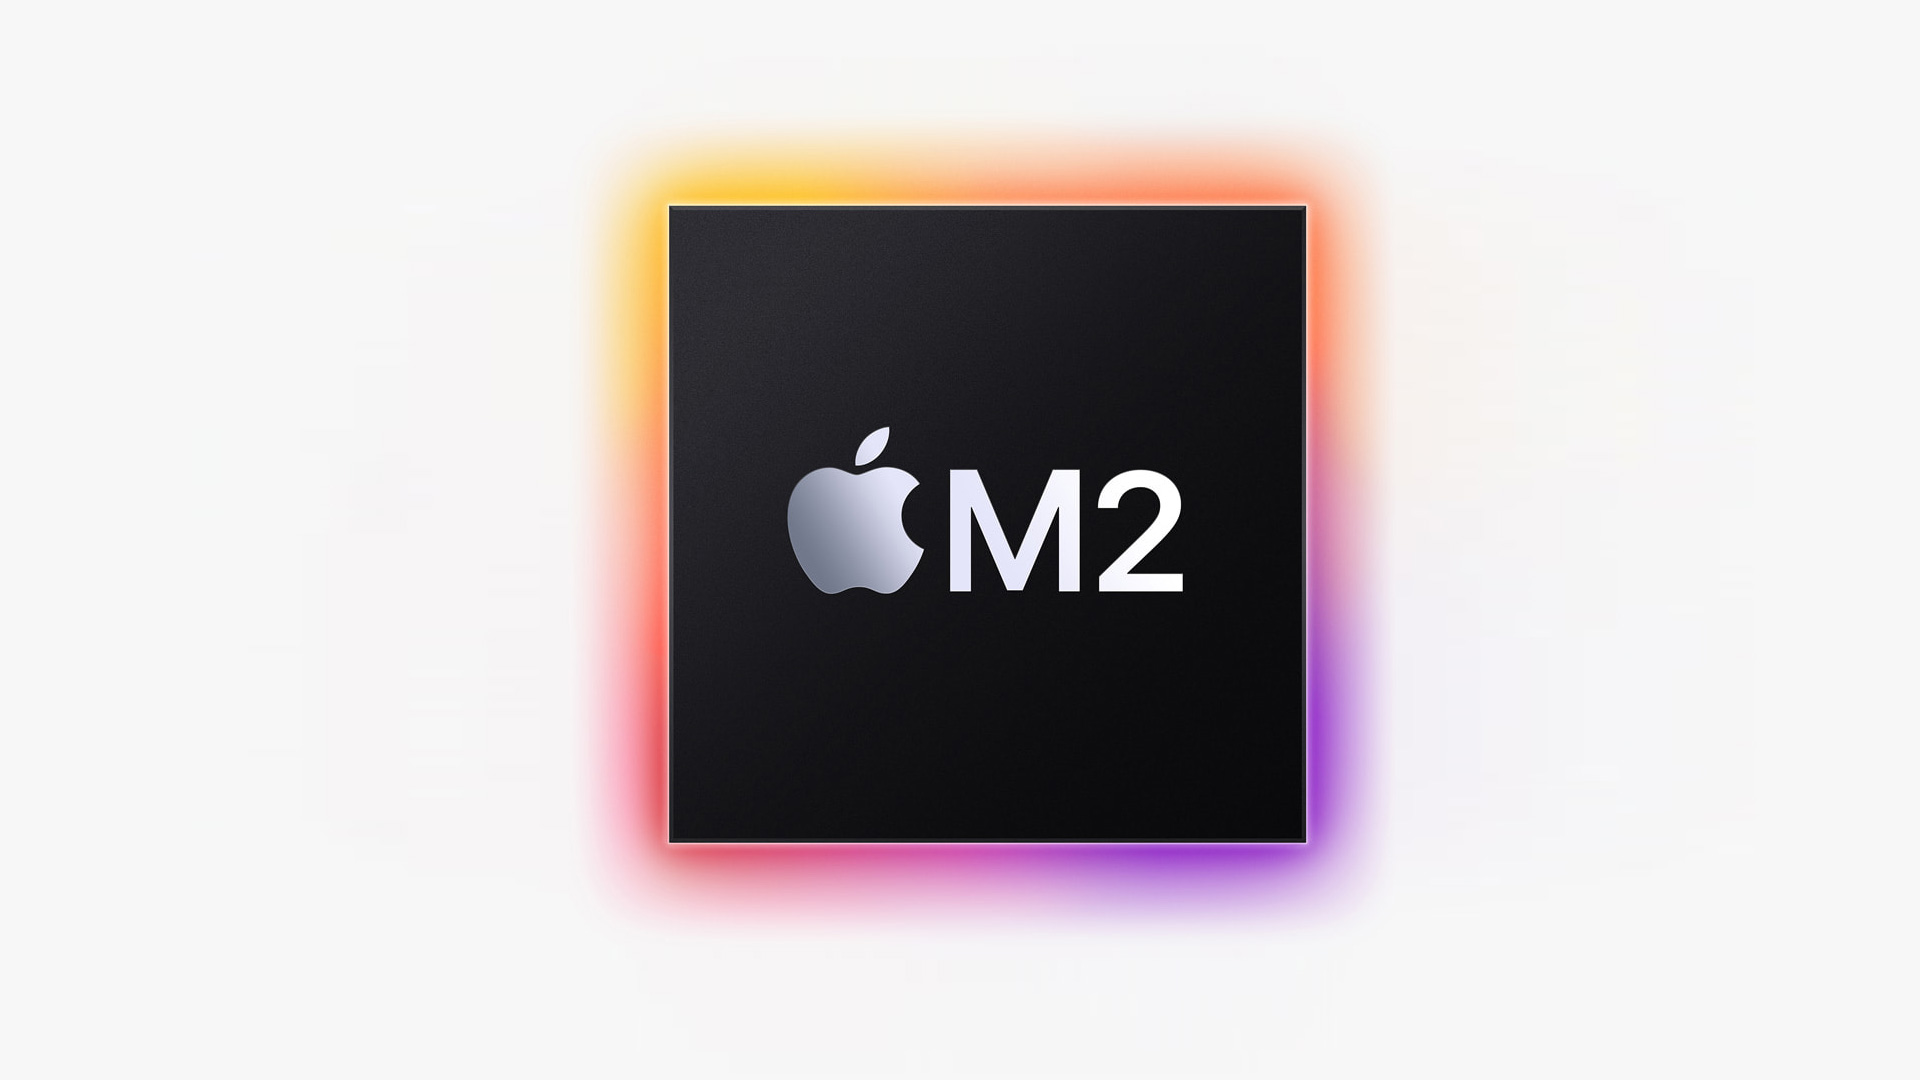 O novo processador M2 da Apple é revelado na WWDC